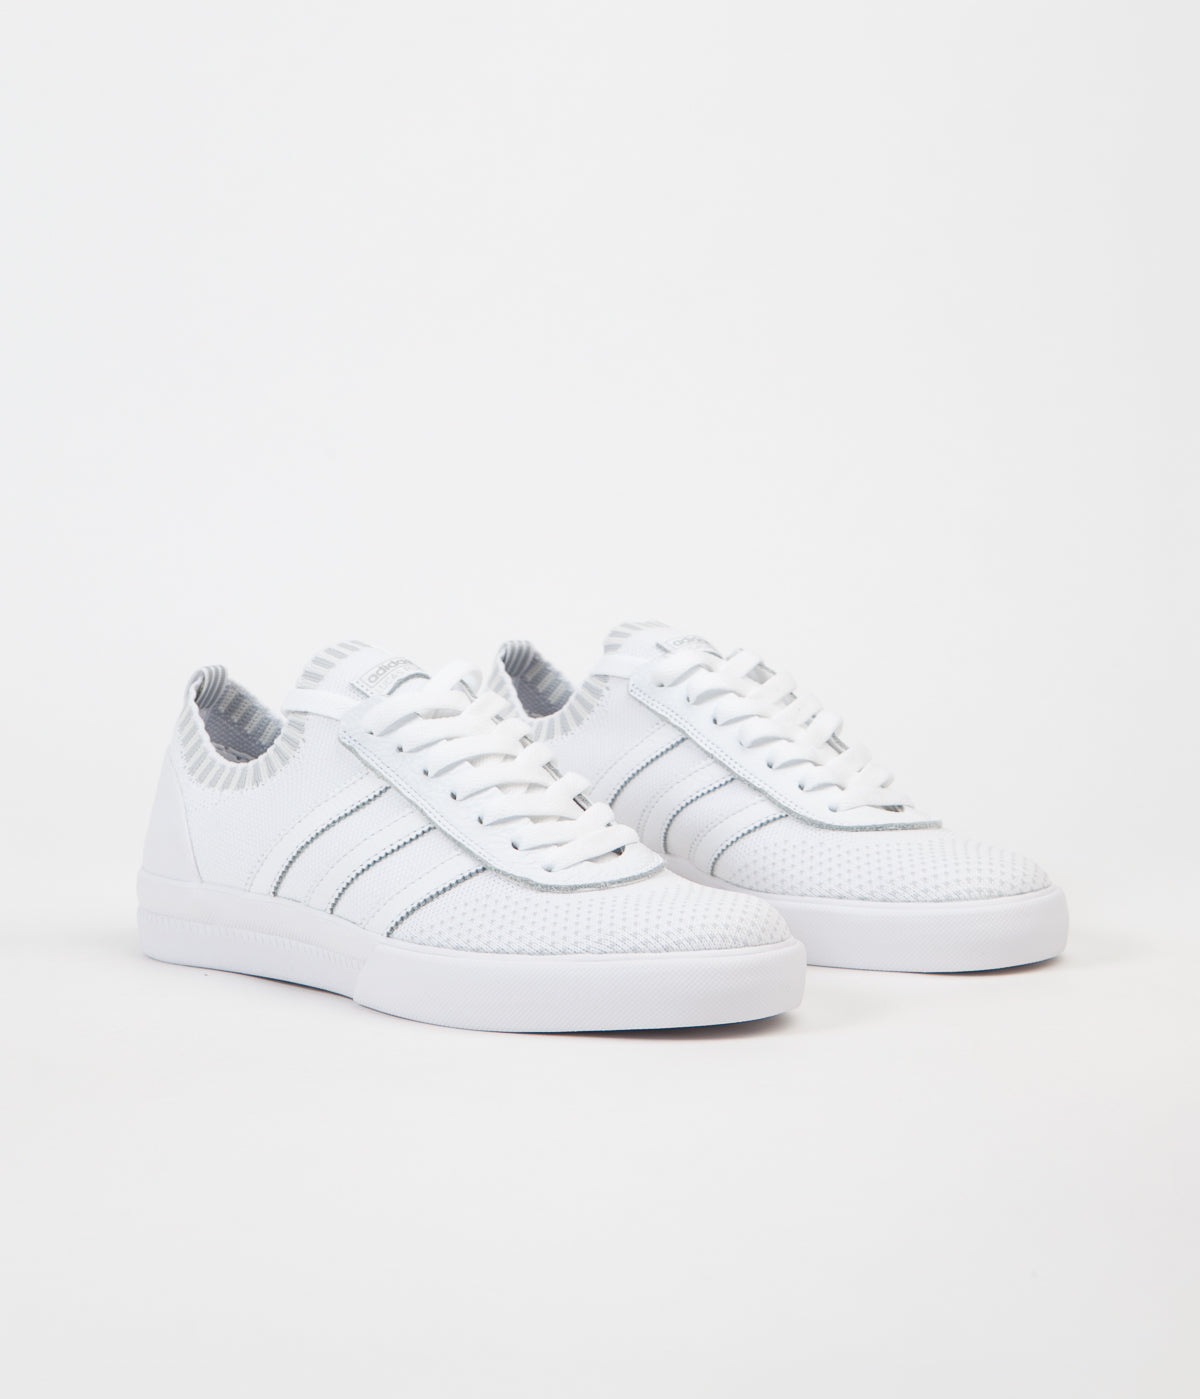 Adidas Lucas Premiere Primeknit Shoes - White / White / White | Flatspot